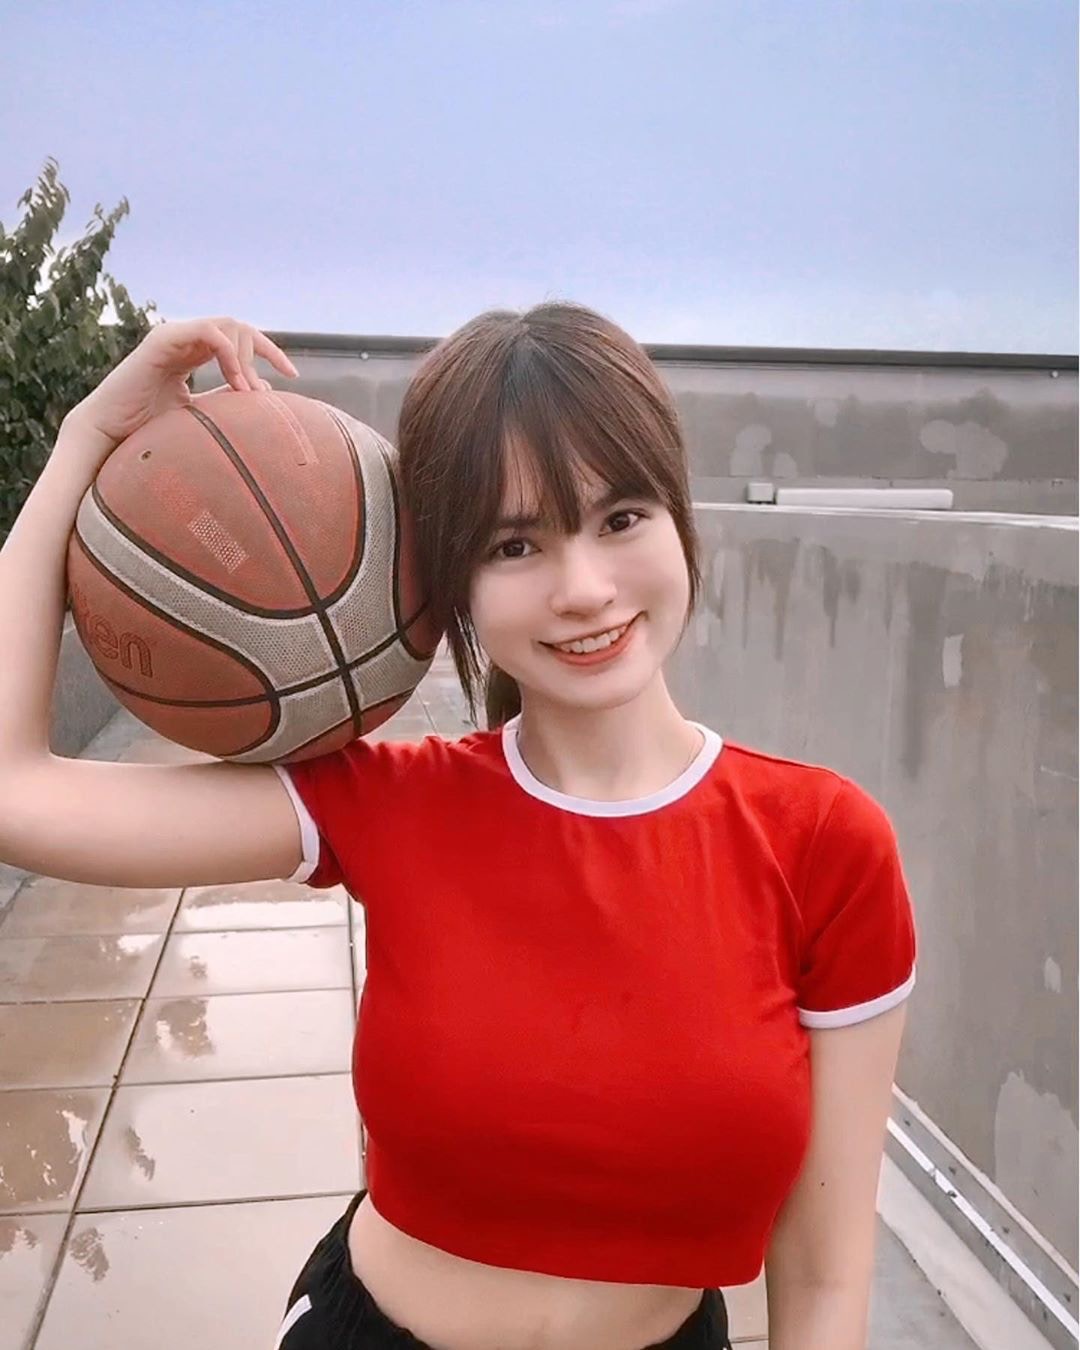 多圖 大馬美女網紅cheri被封籃球女神網民紛紛渴望跟她打球